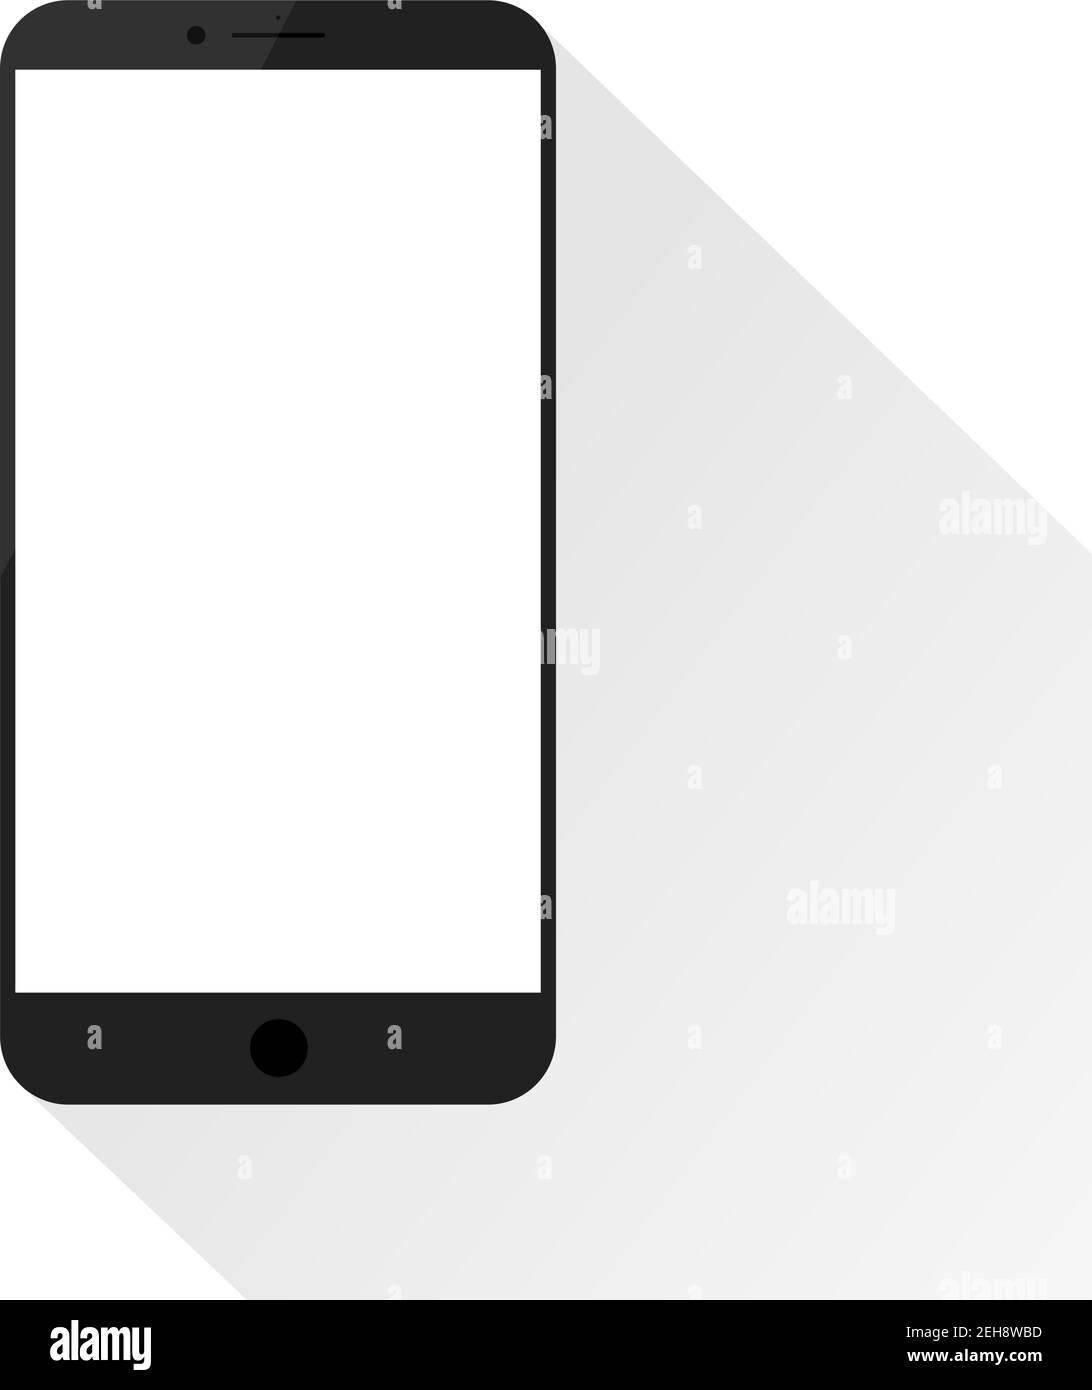 Maquette de smartphone simple avec écran vide et clignotement. Ombre légère et arrière-plan blanc. Illustration de Vecteur